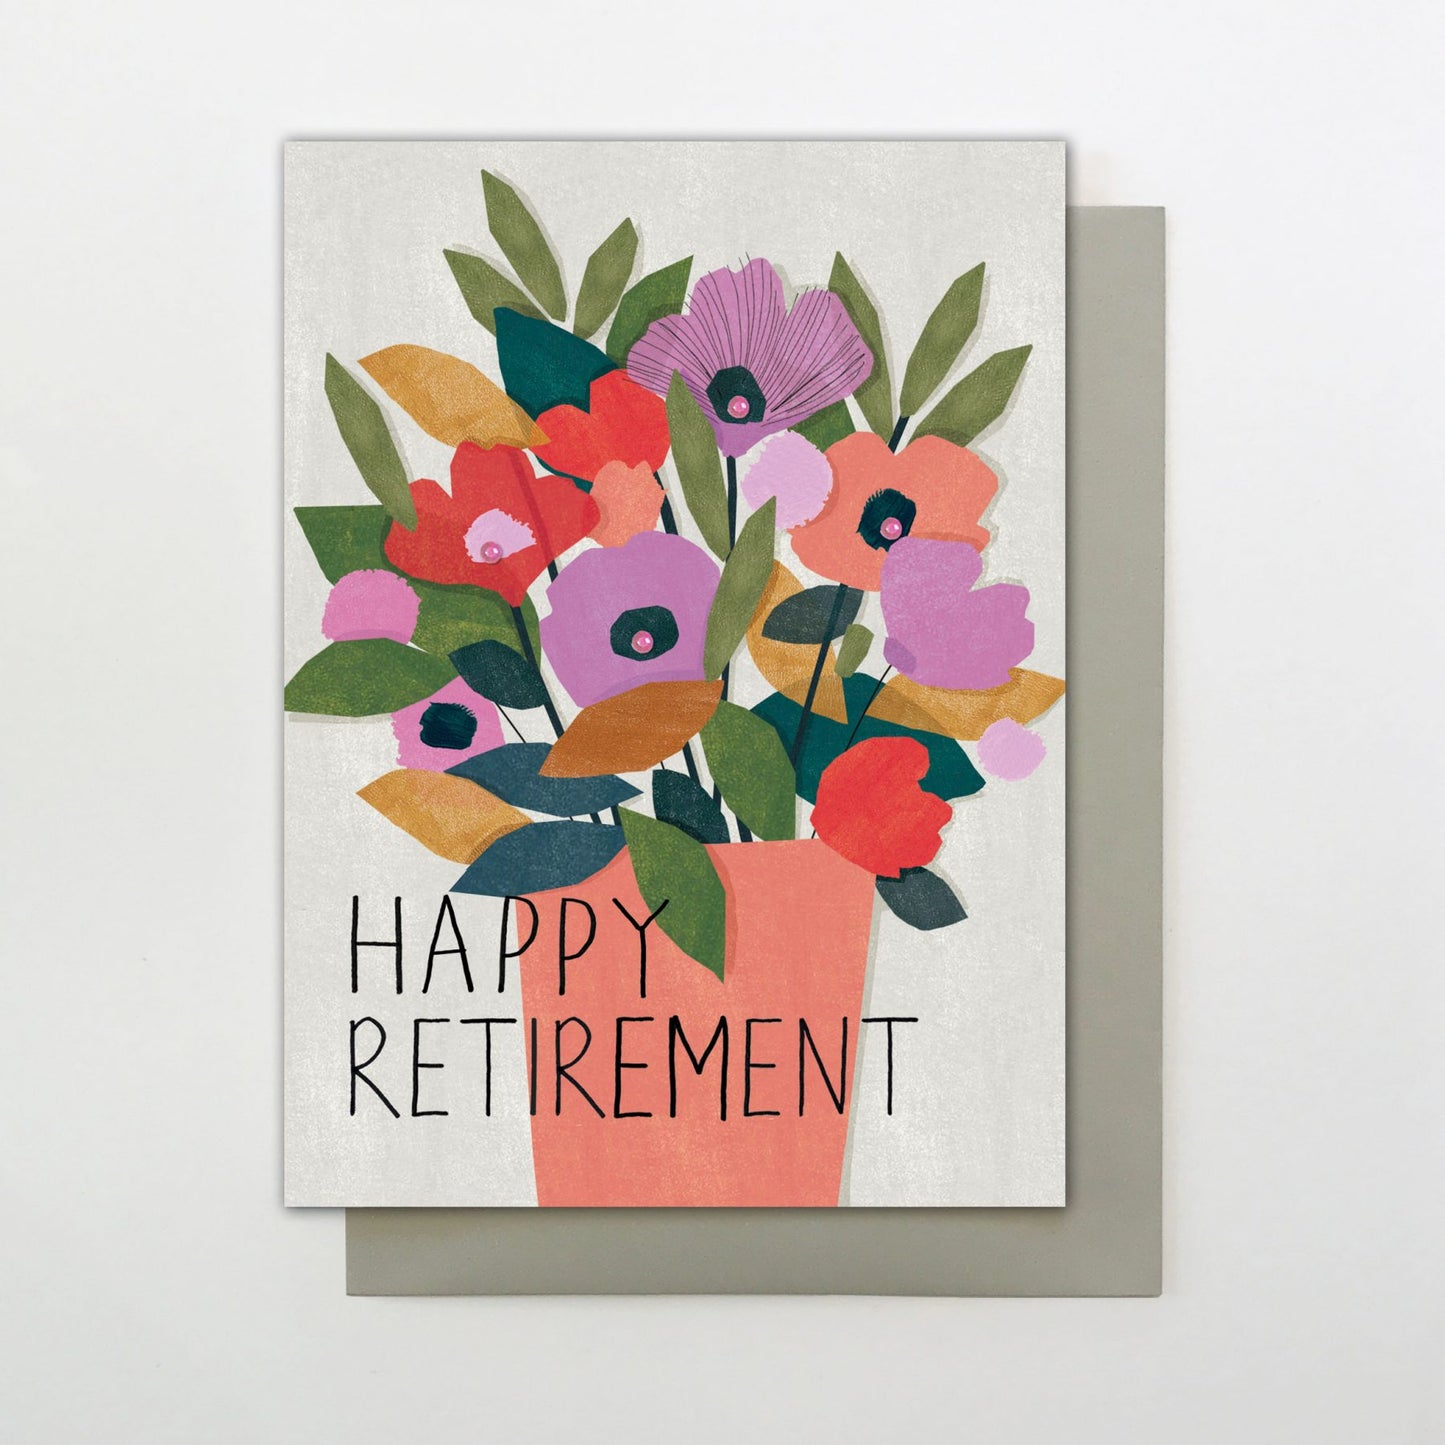 Happy retirement